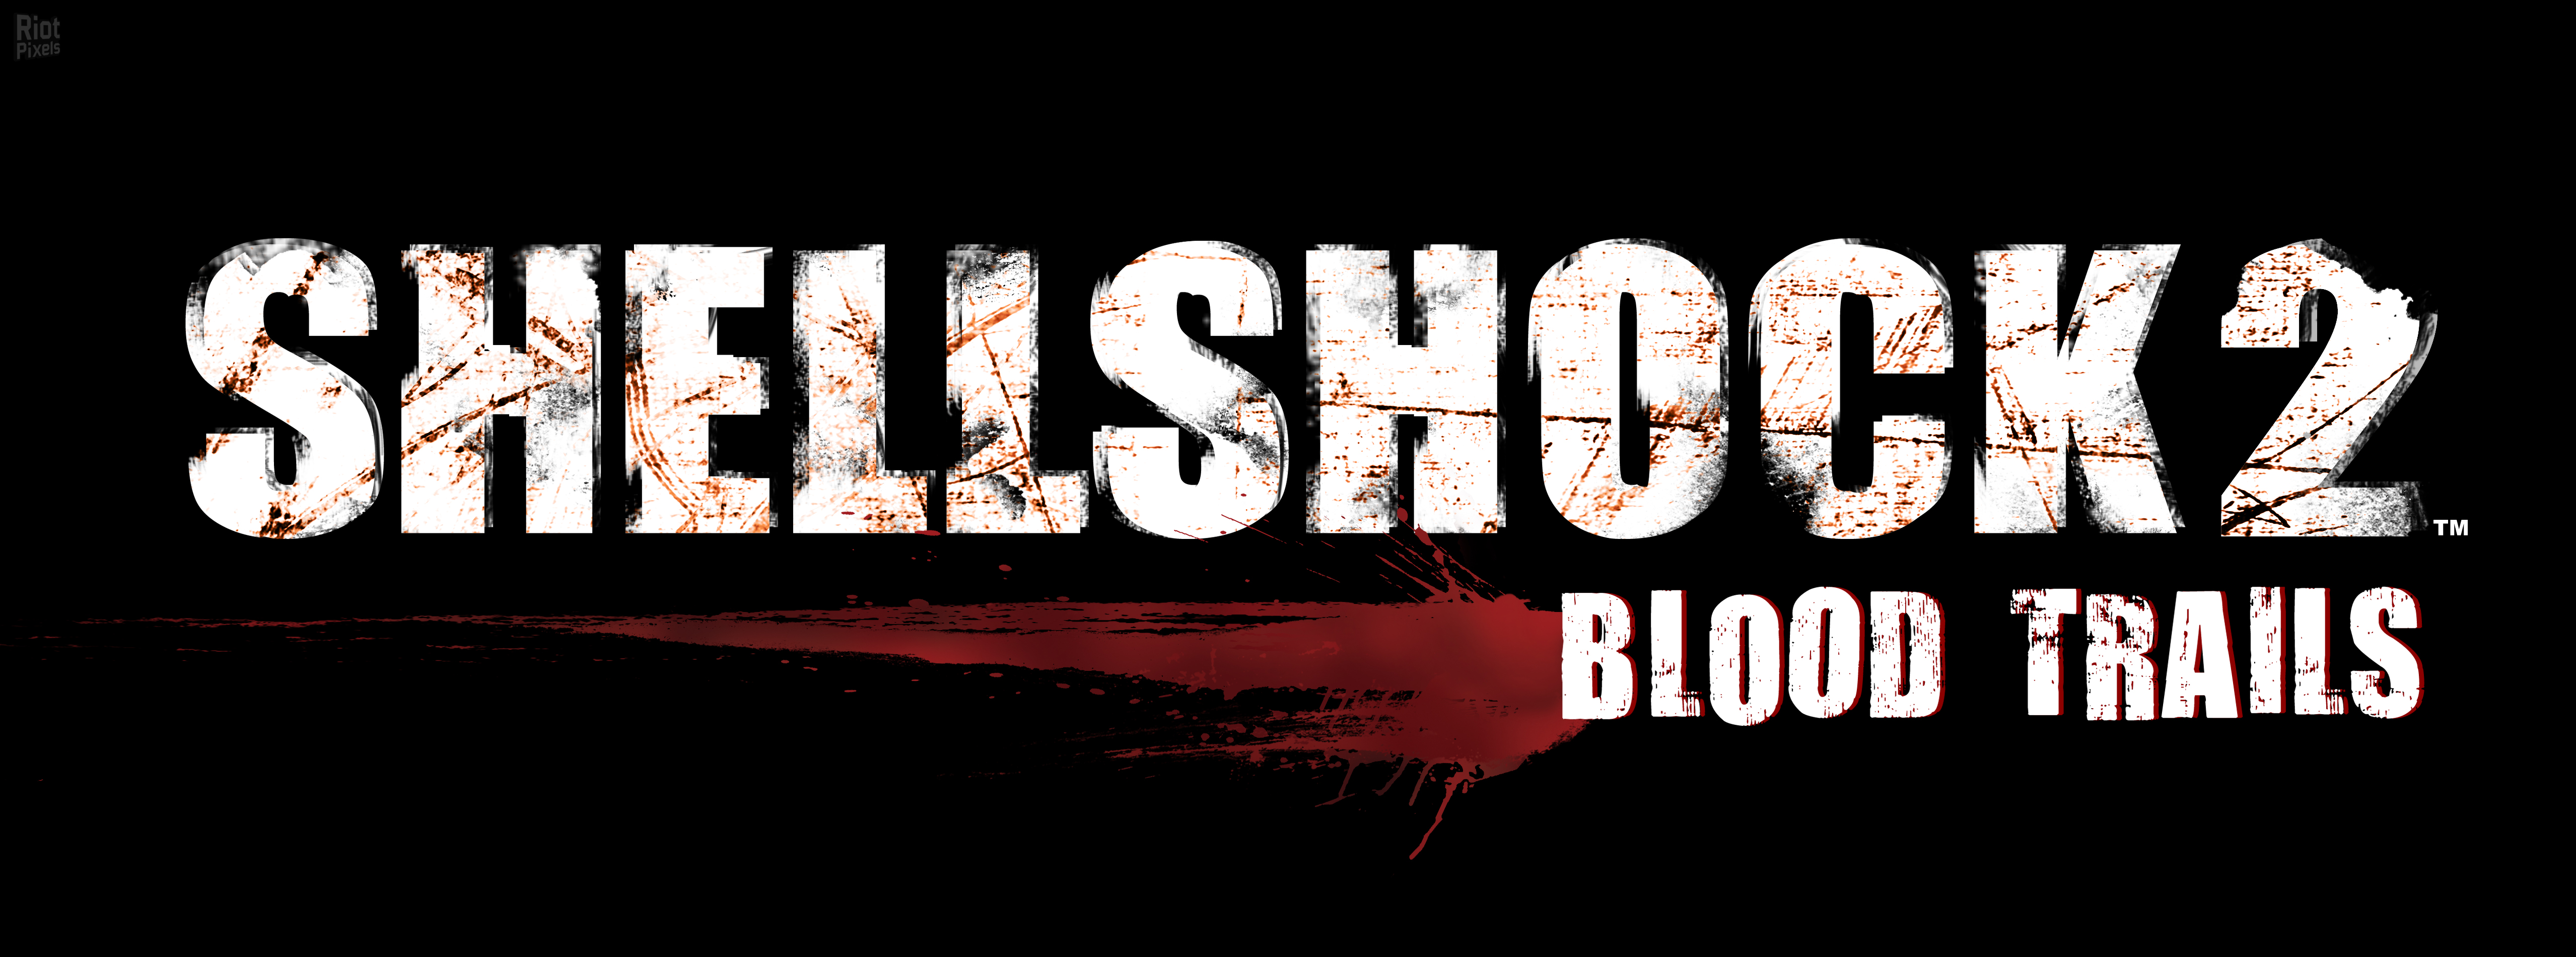 Shellshock 2: Shellshockier